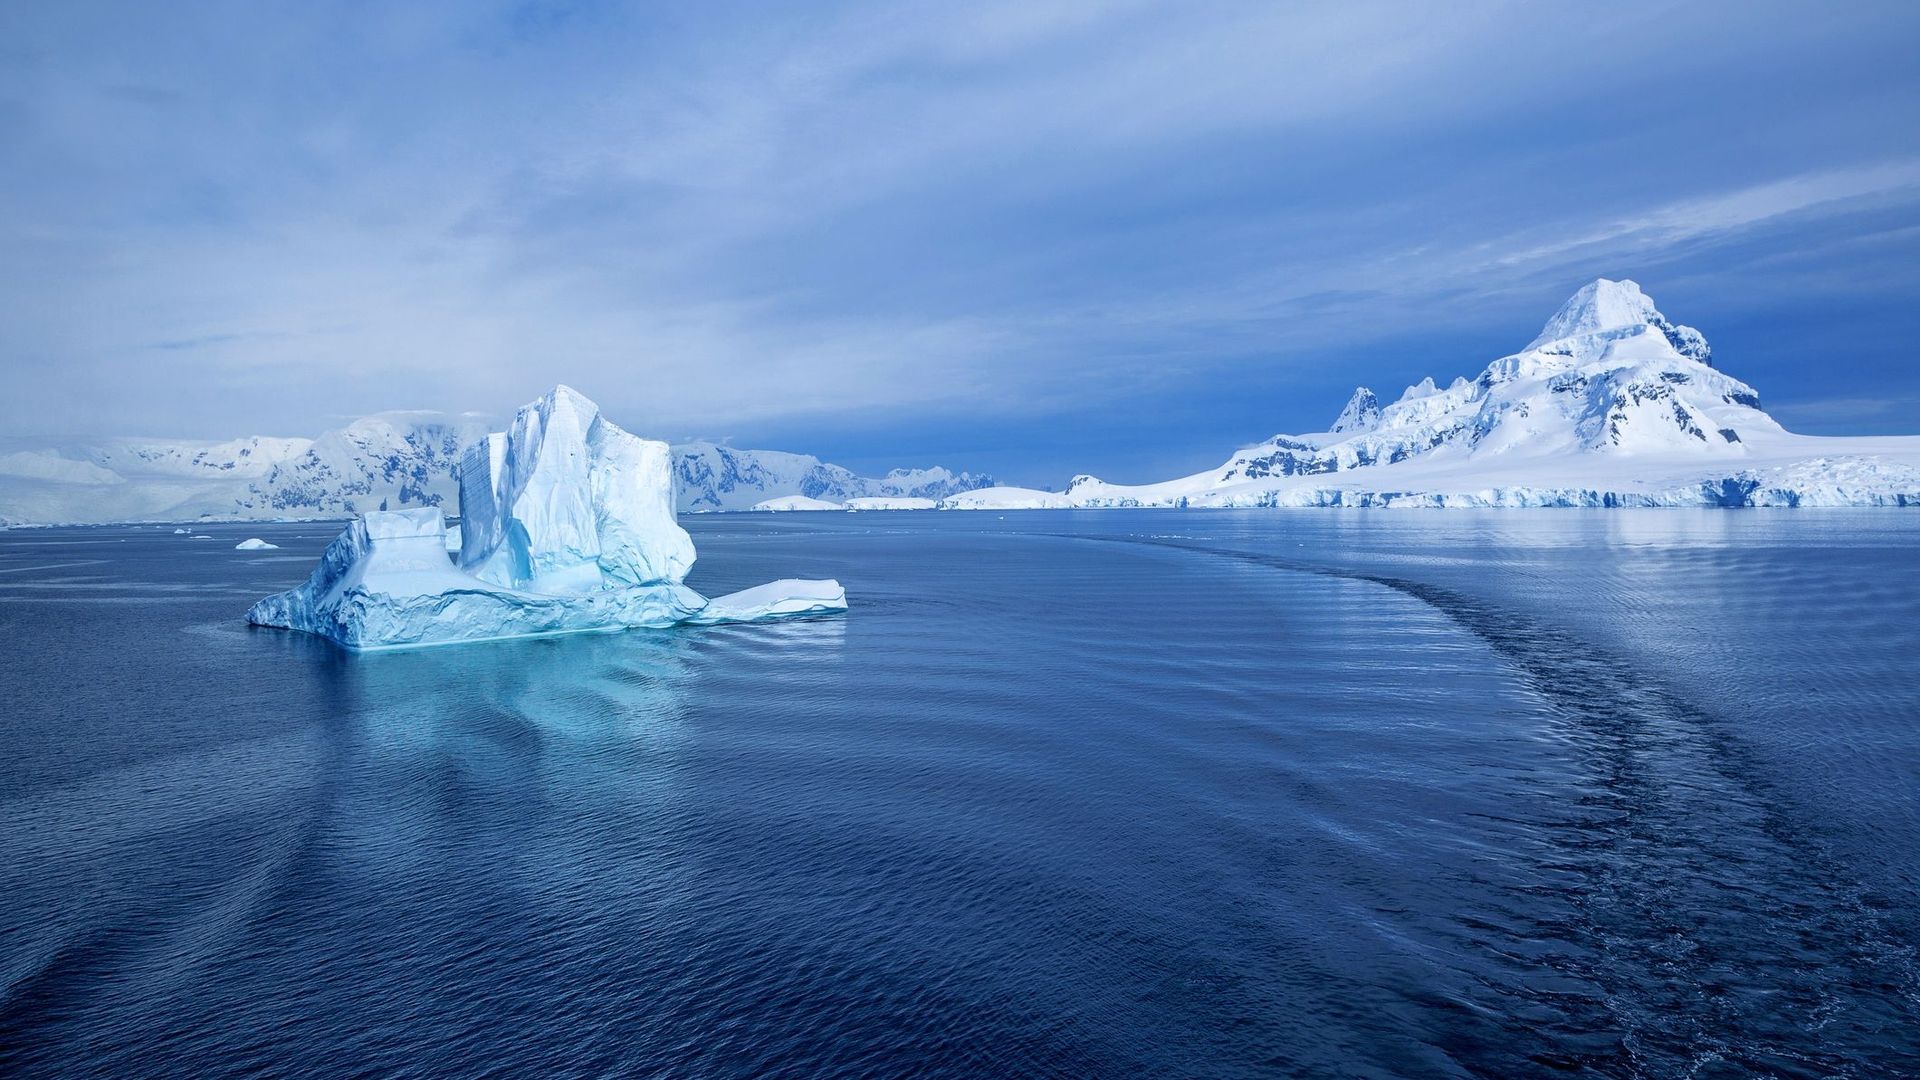 Pour l'Antarctique et le niveau des mers, chaque degré compte, selon une étude.